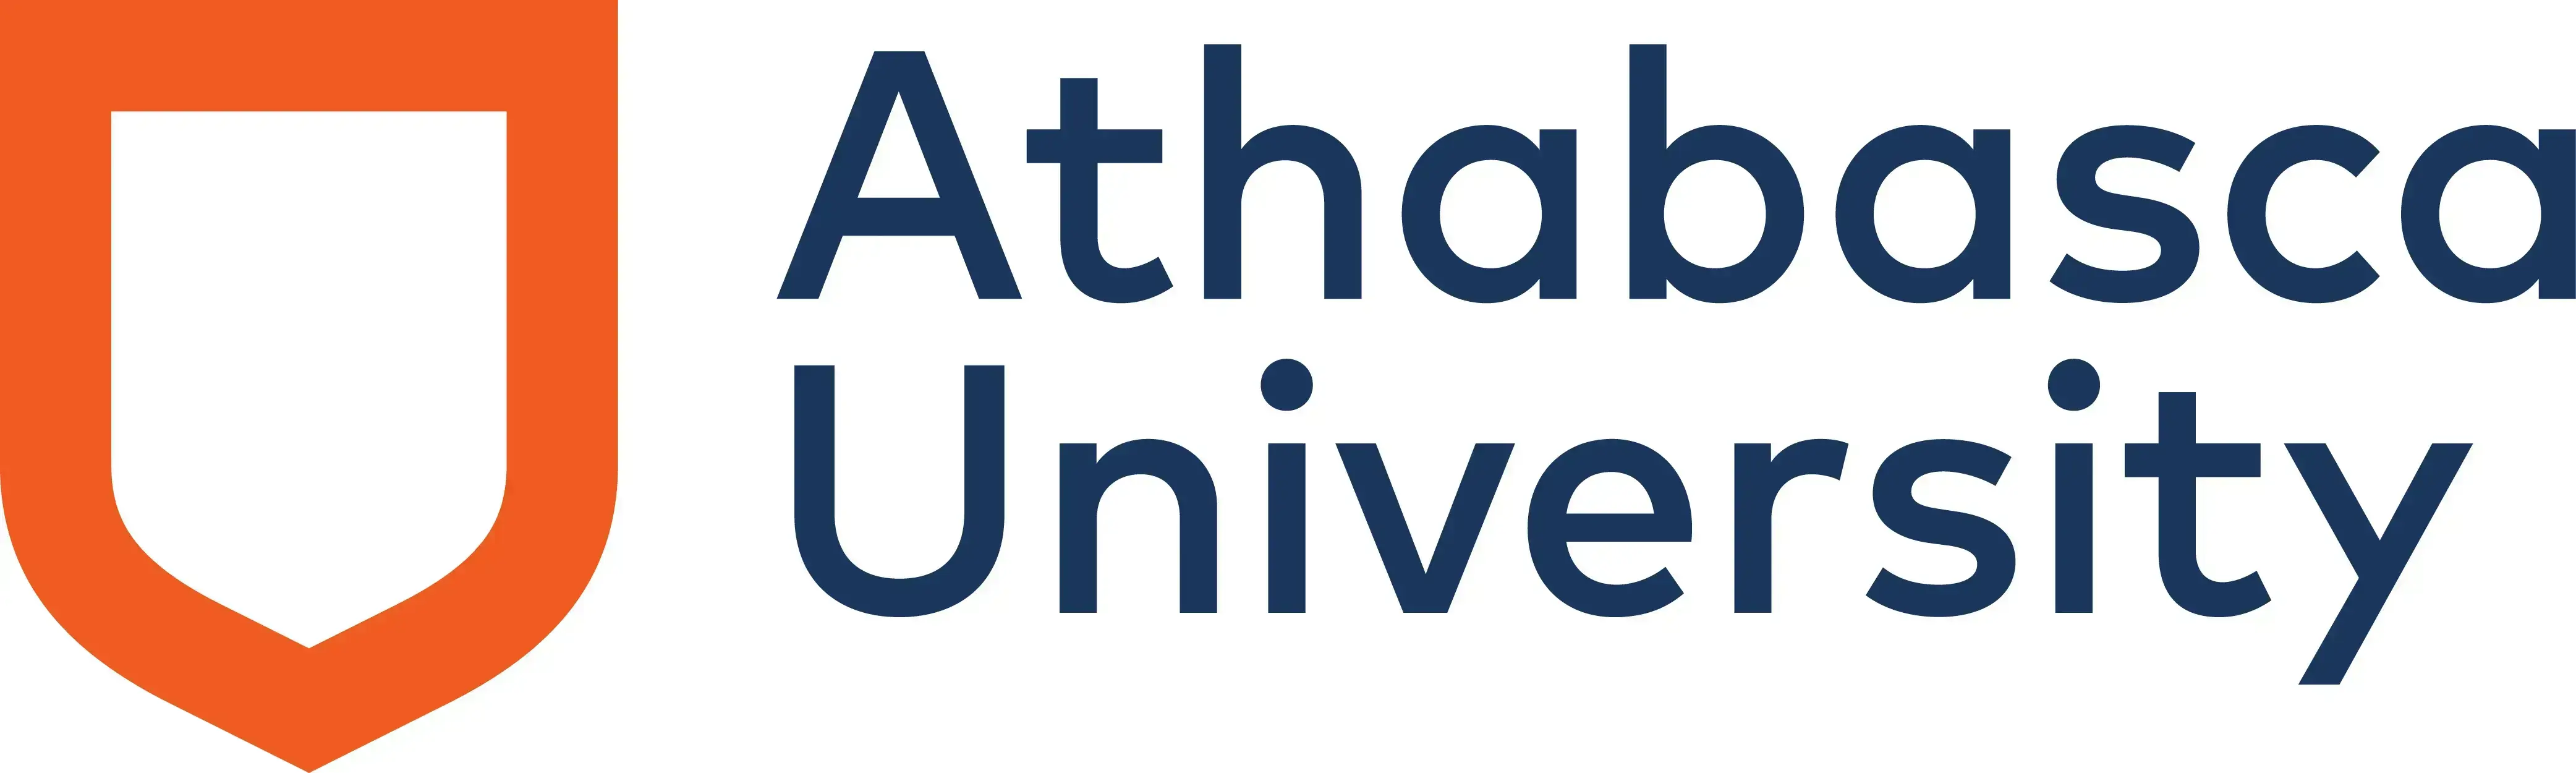 Athabasca University (AU)